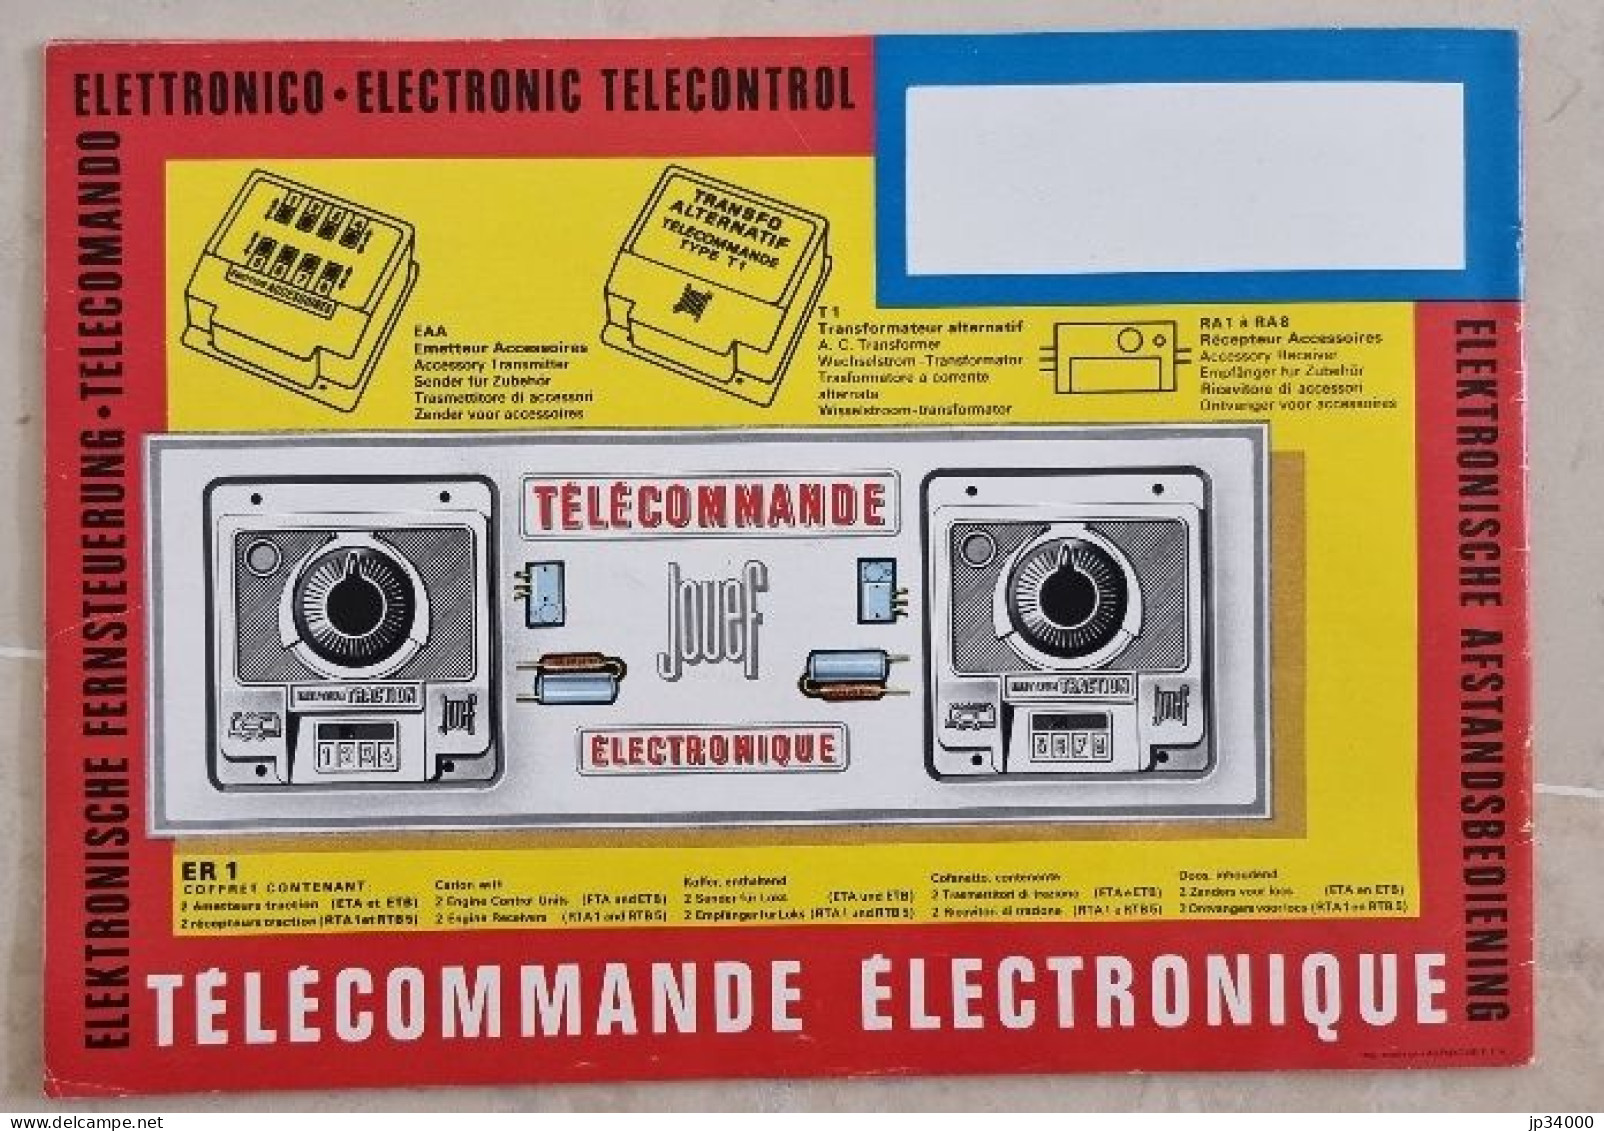 TELECOMMANDE ELECTRONIQUE (Jouef HO) Complet 32 Pages, 1968-69 (Trains Electriques) - Literatur & DVD